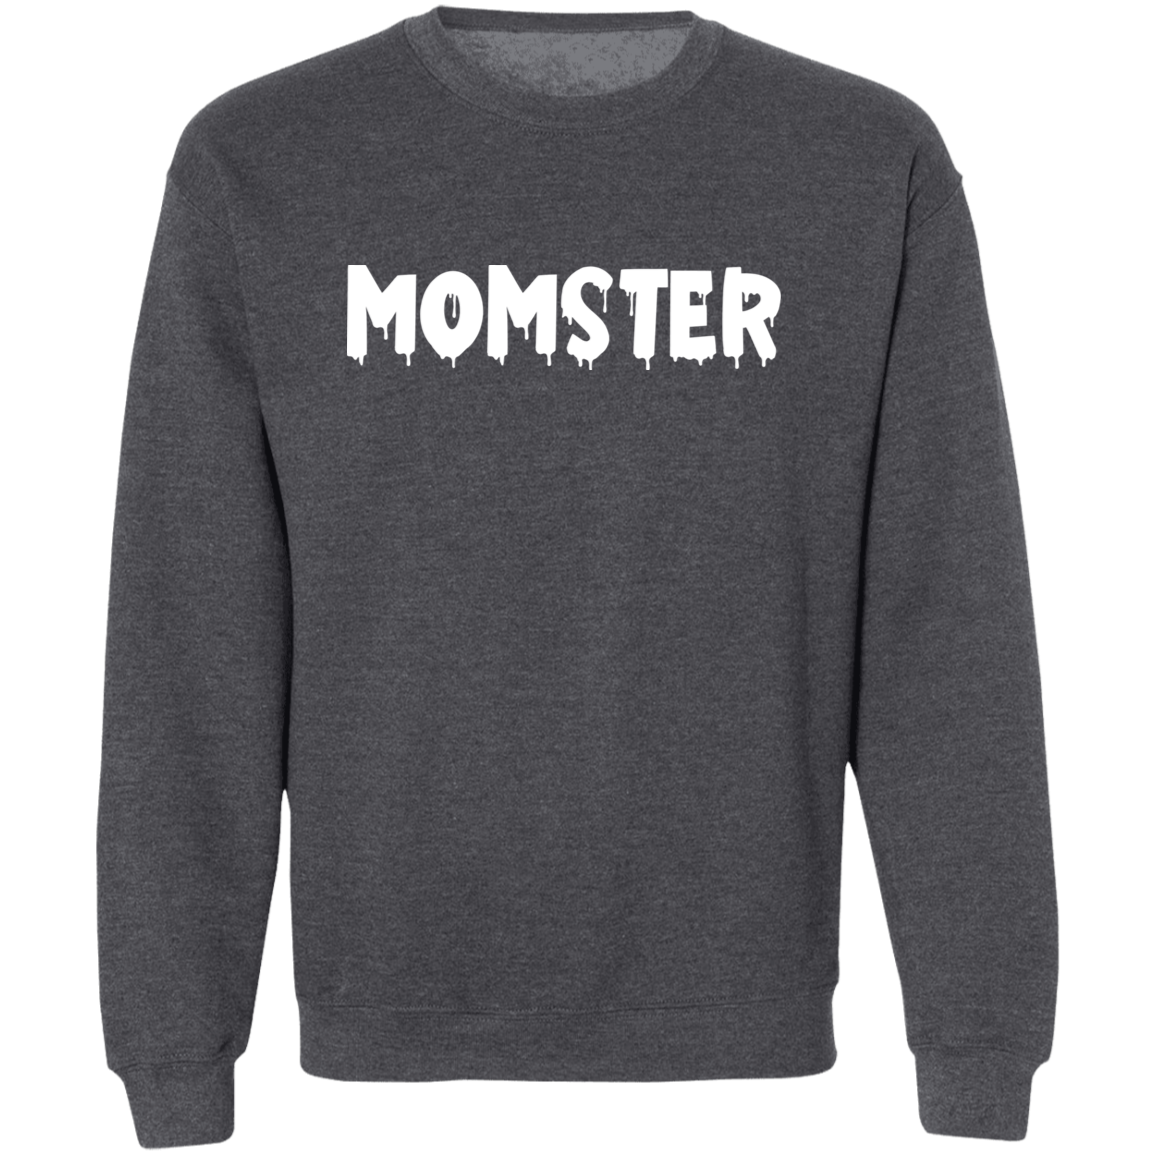 Momster Women's Pullover Crewneck Sweatshirt